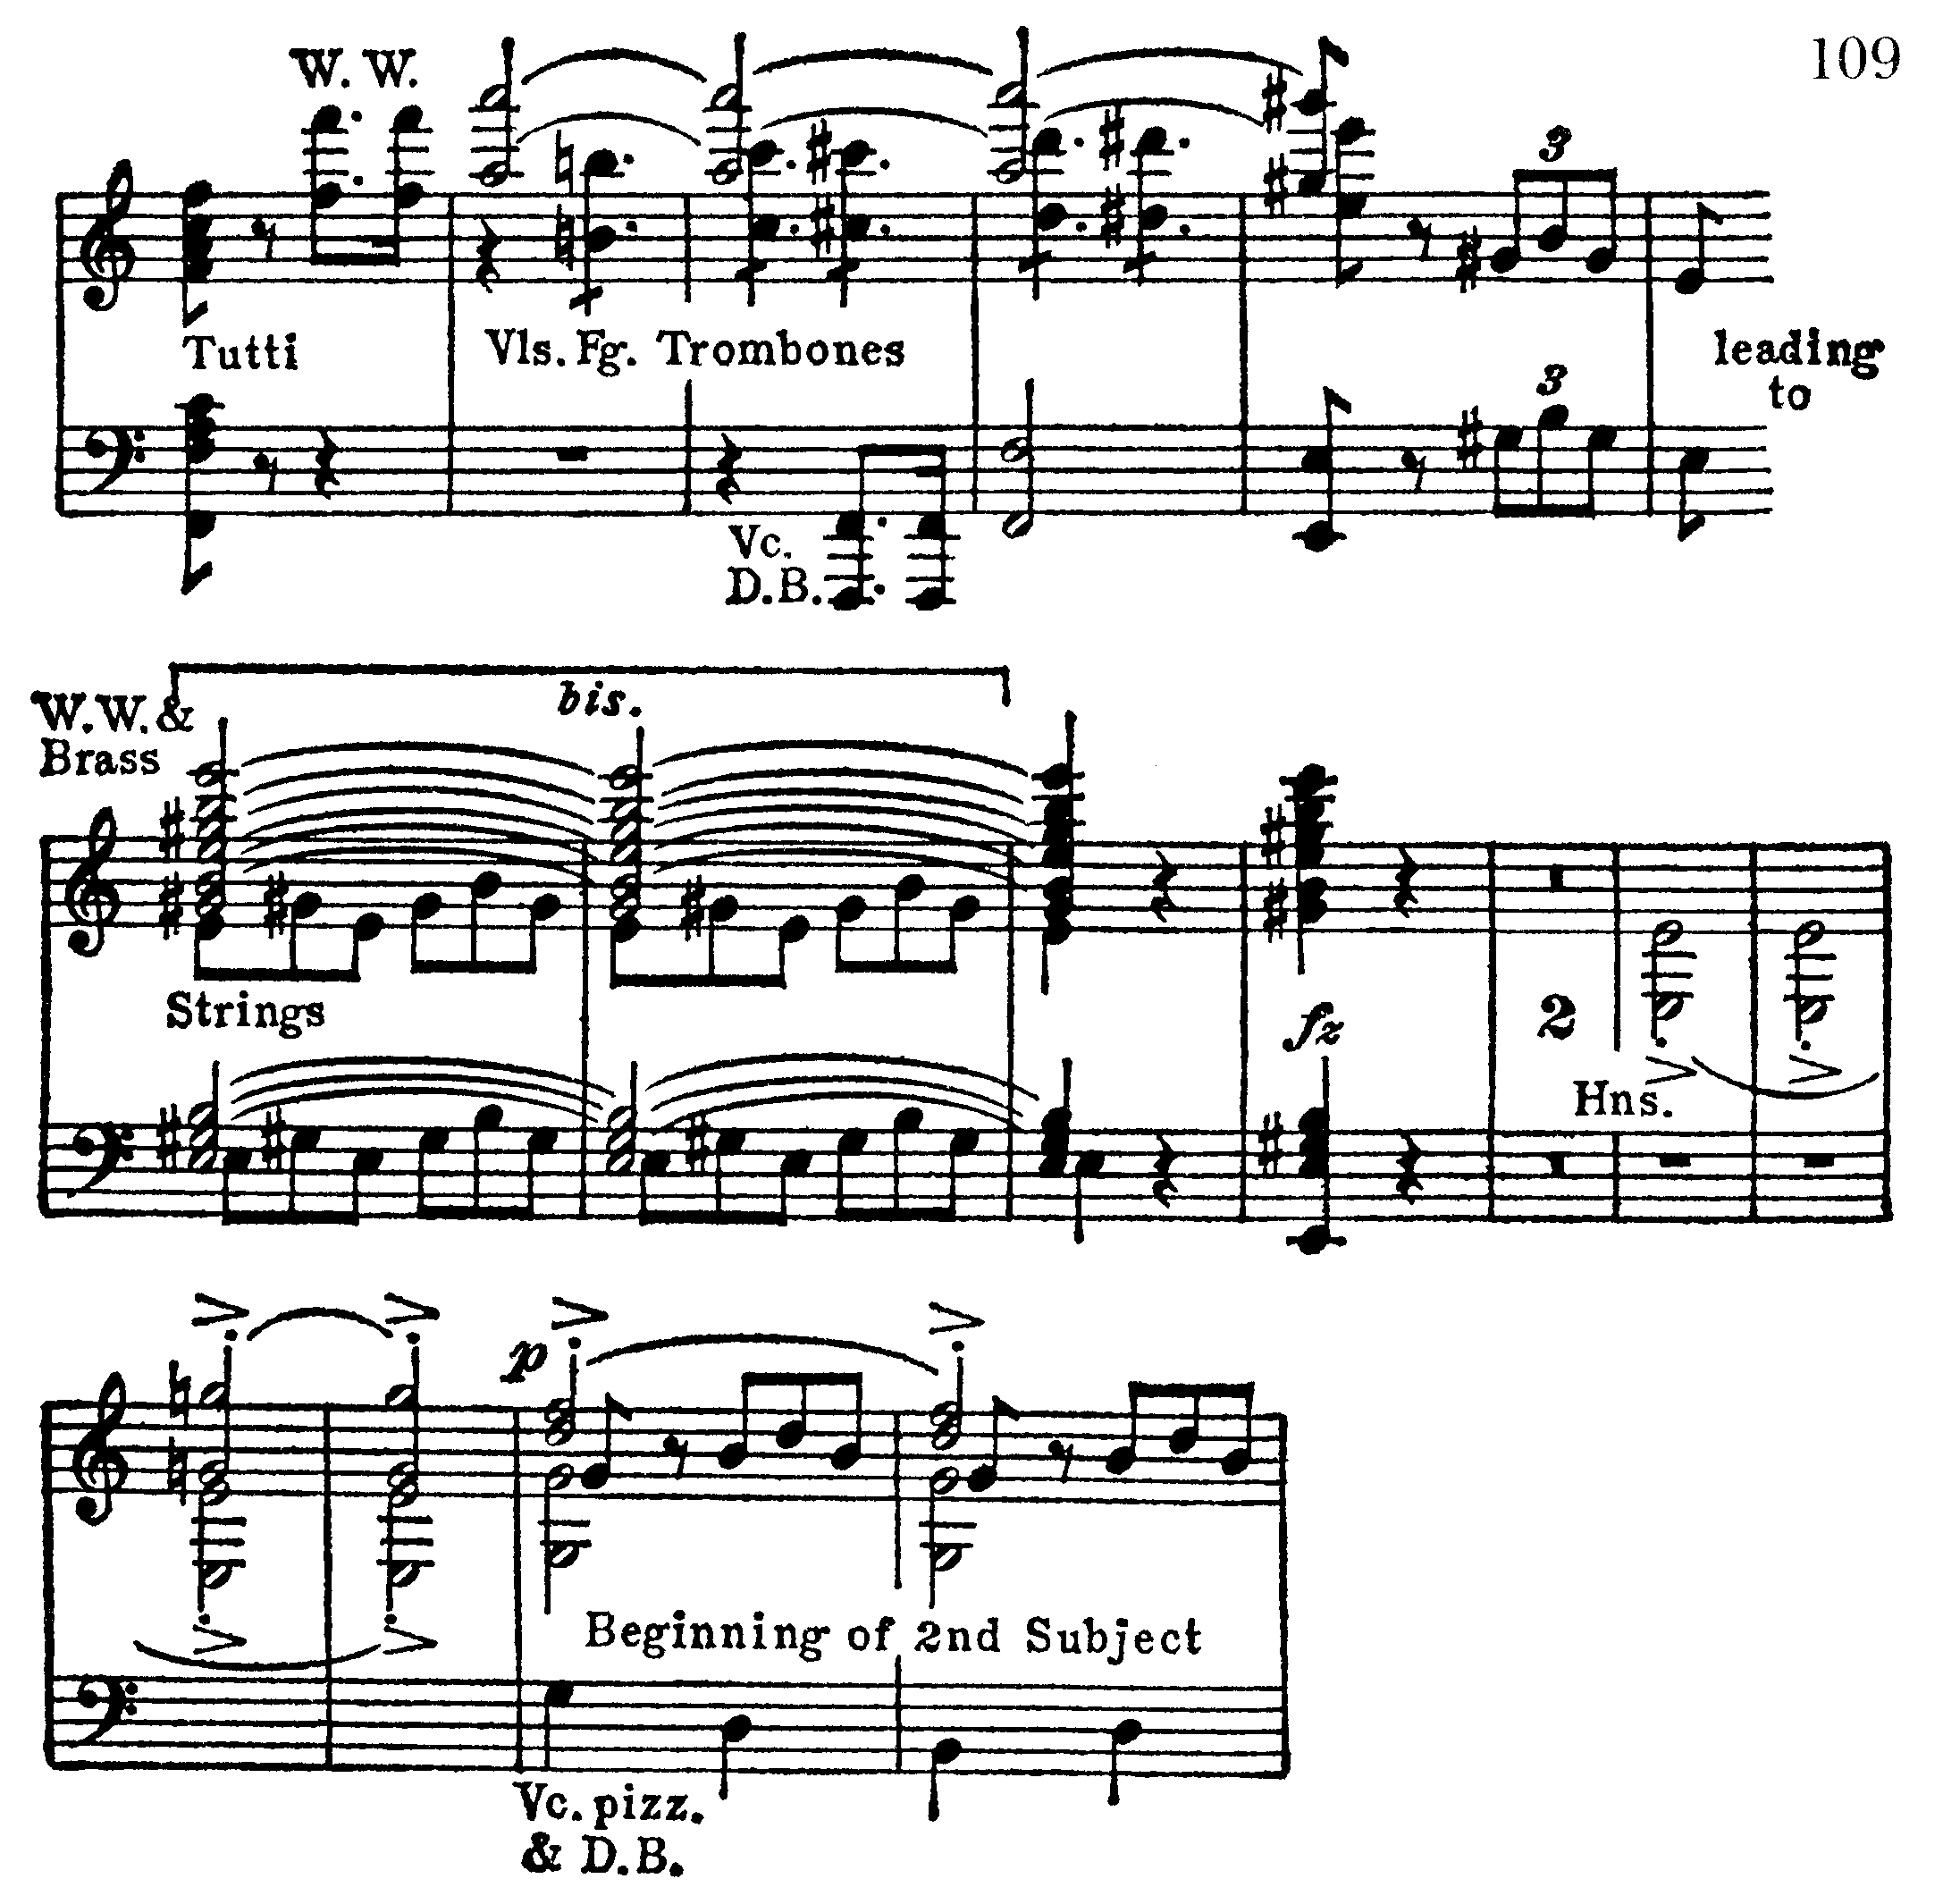 Symfoni, ex 109